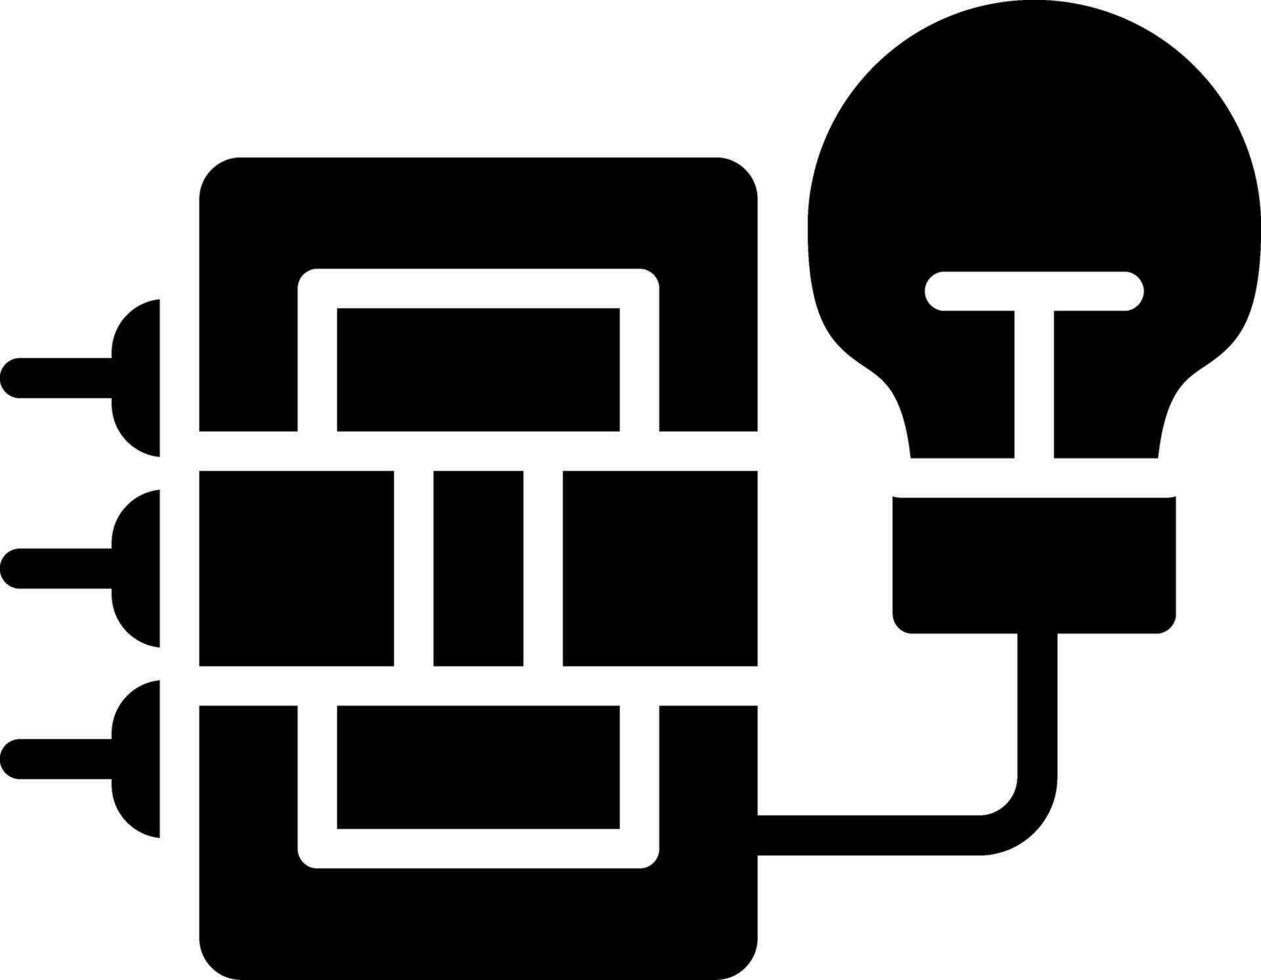 Circuit Creative Icon Design vector